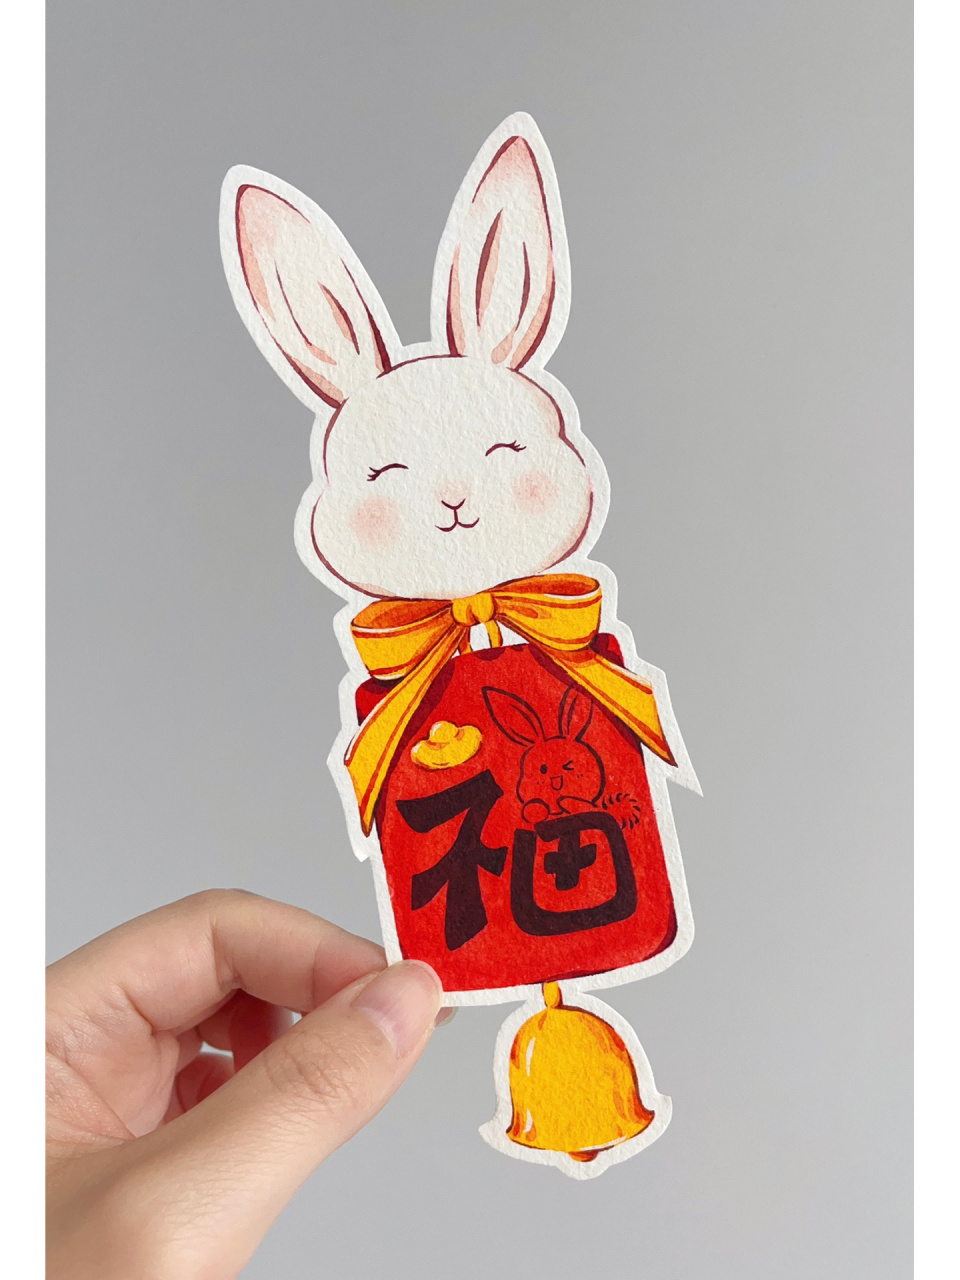 水彩书签～小兔子福牌(附过程图) 小兔子福牌给大家送福喽0505